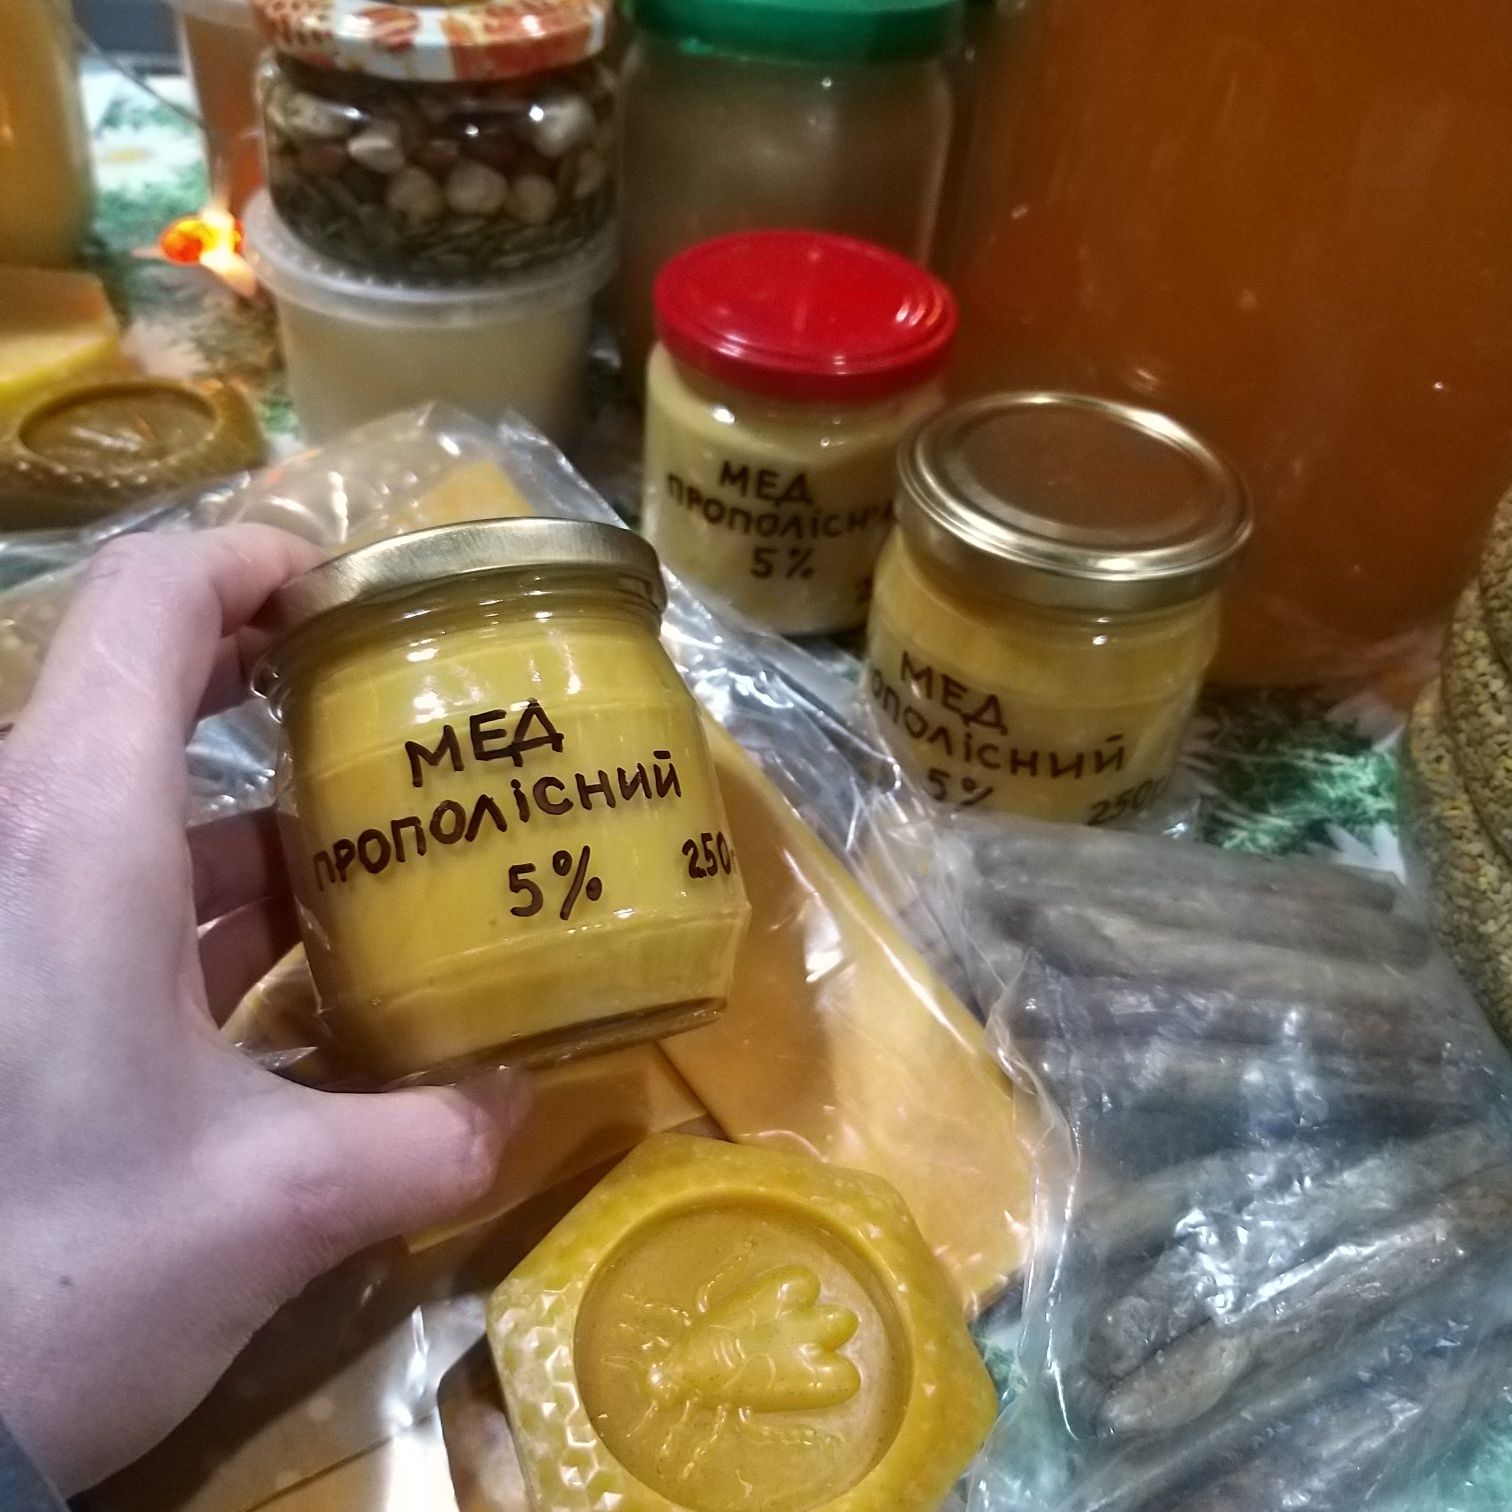 Прополісний мед 5% 250 г (прополисный мед, мед с прополисом)